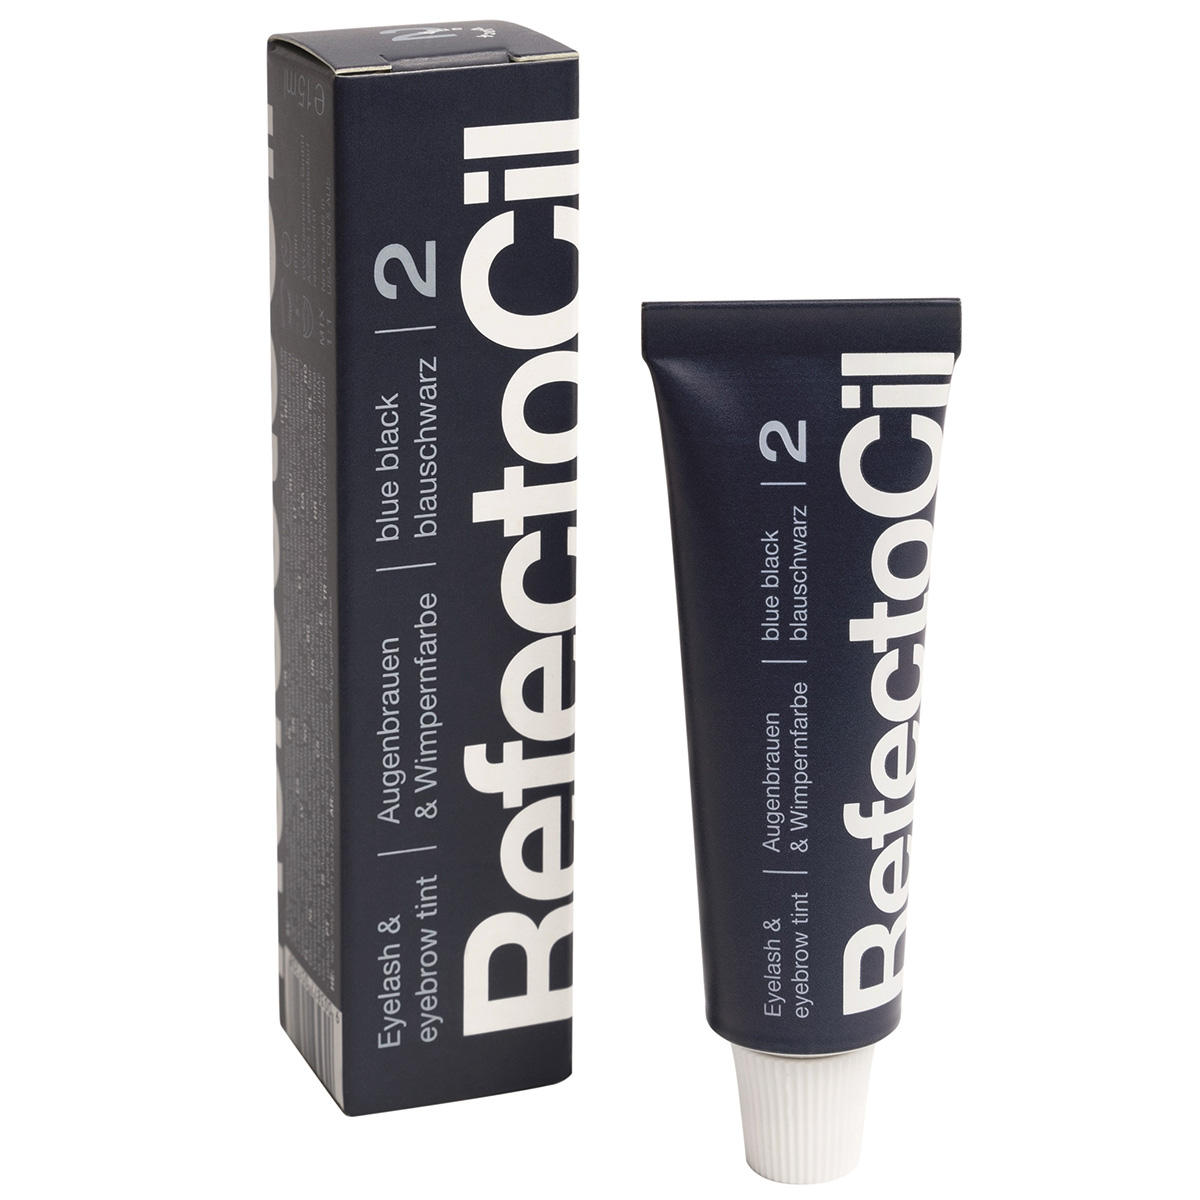 RefectoCil Augenbrauen- und Wimpernfarbe Blauschwarz, Inhalt 15 ml - 1